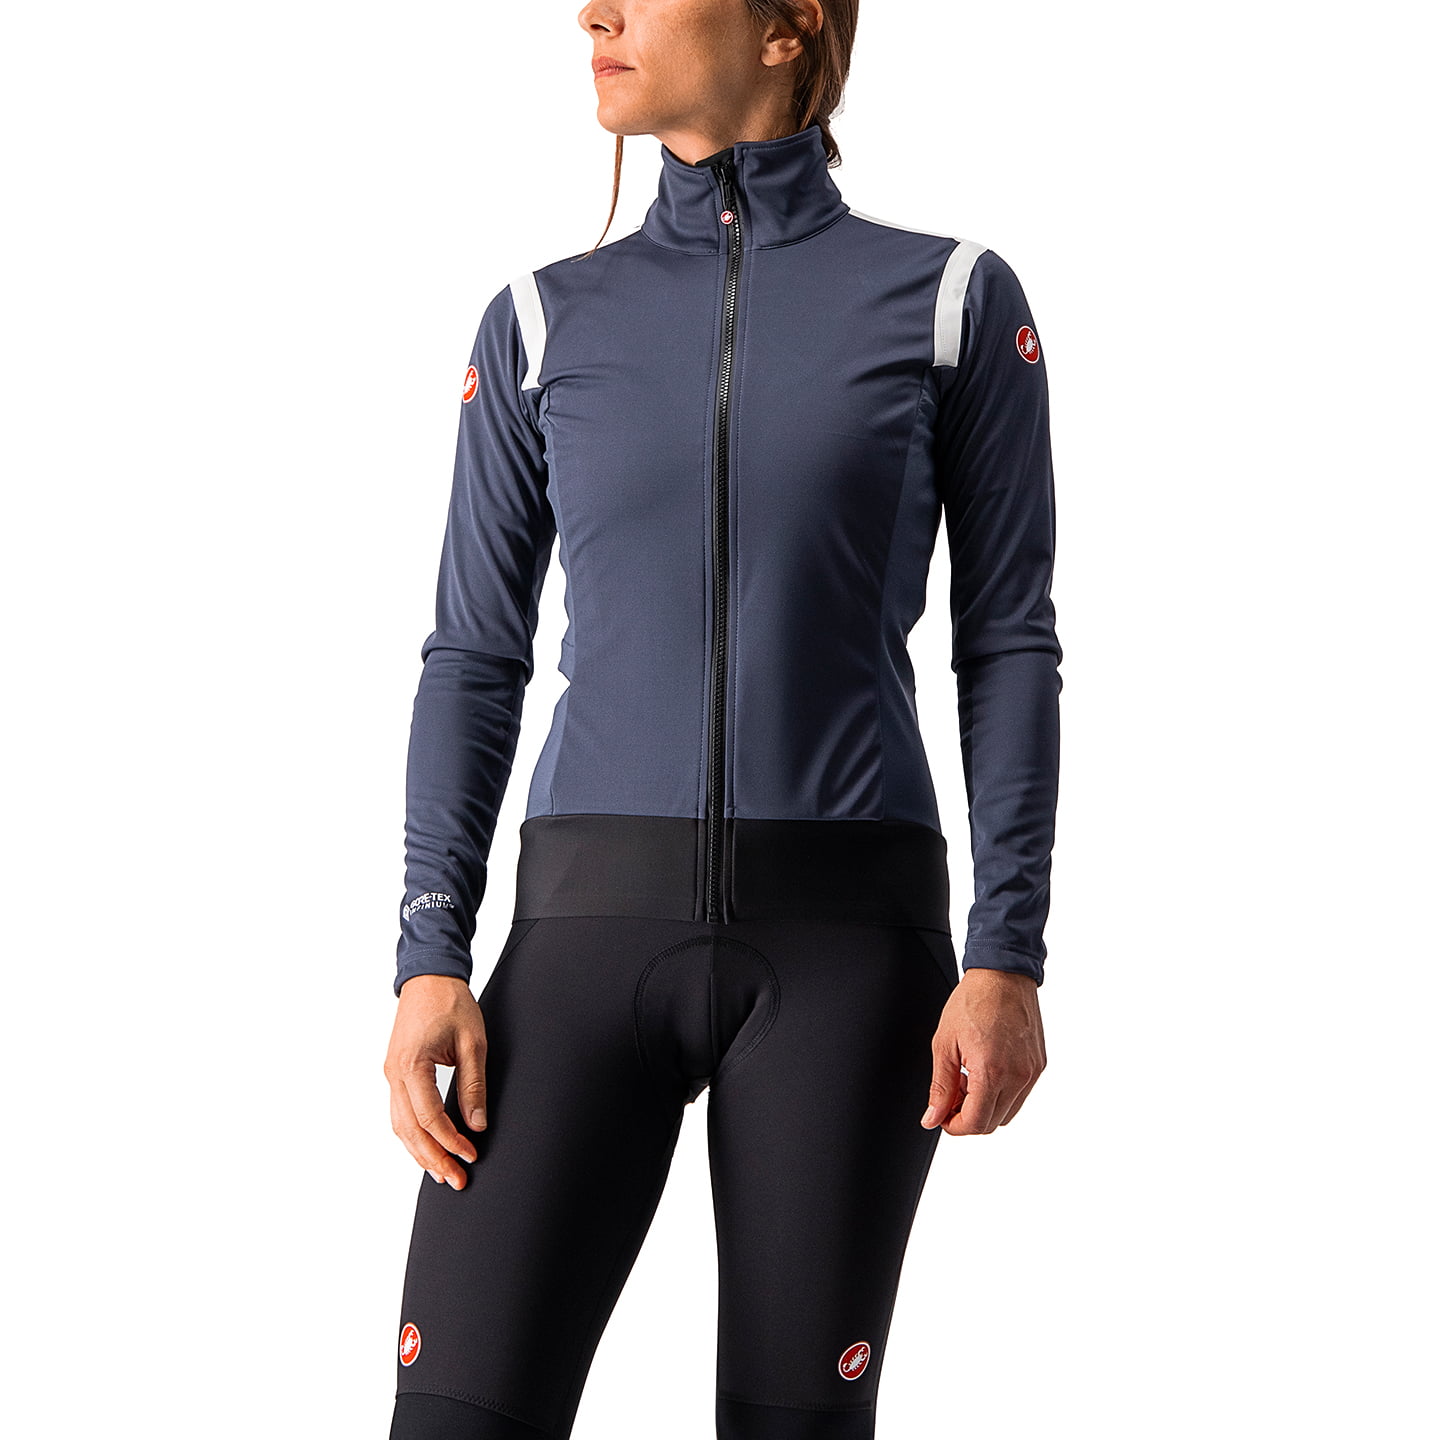 CASTELLI Alpha RoS 2 Women’s Light Jacket Light Jacket, size M, Bike jacket, Cycling clothing